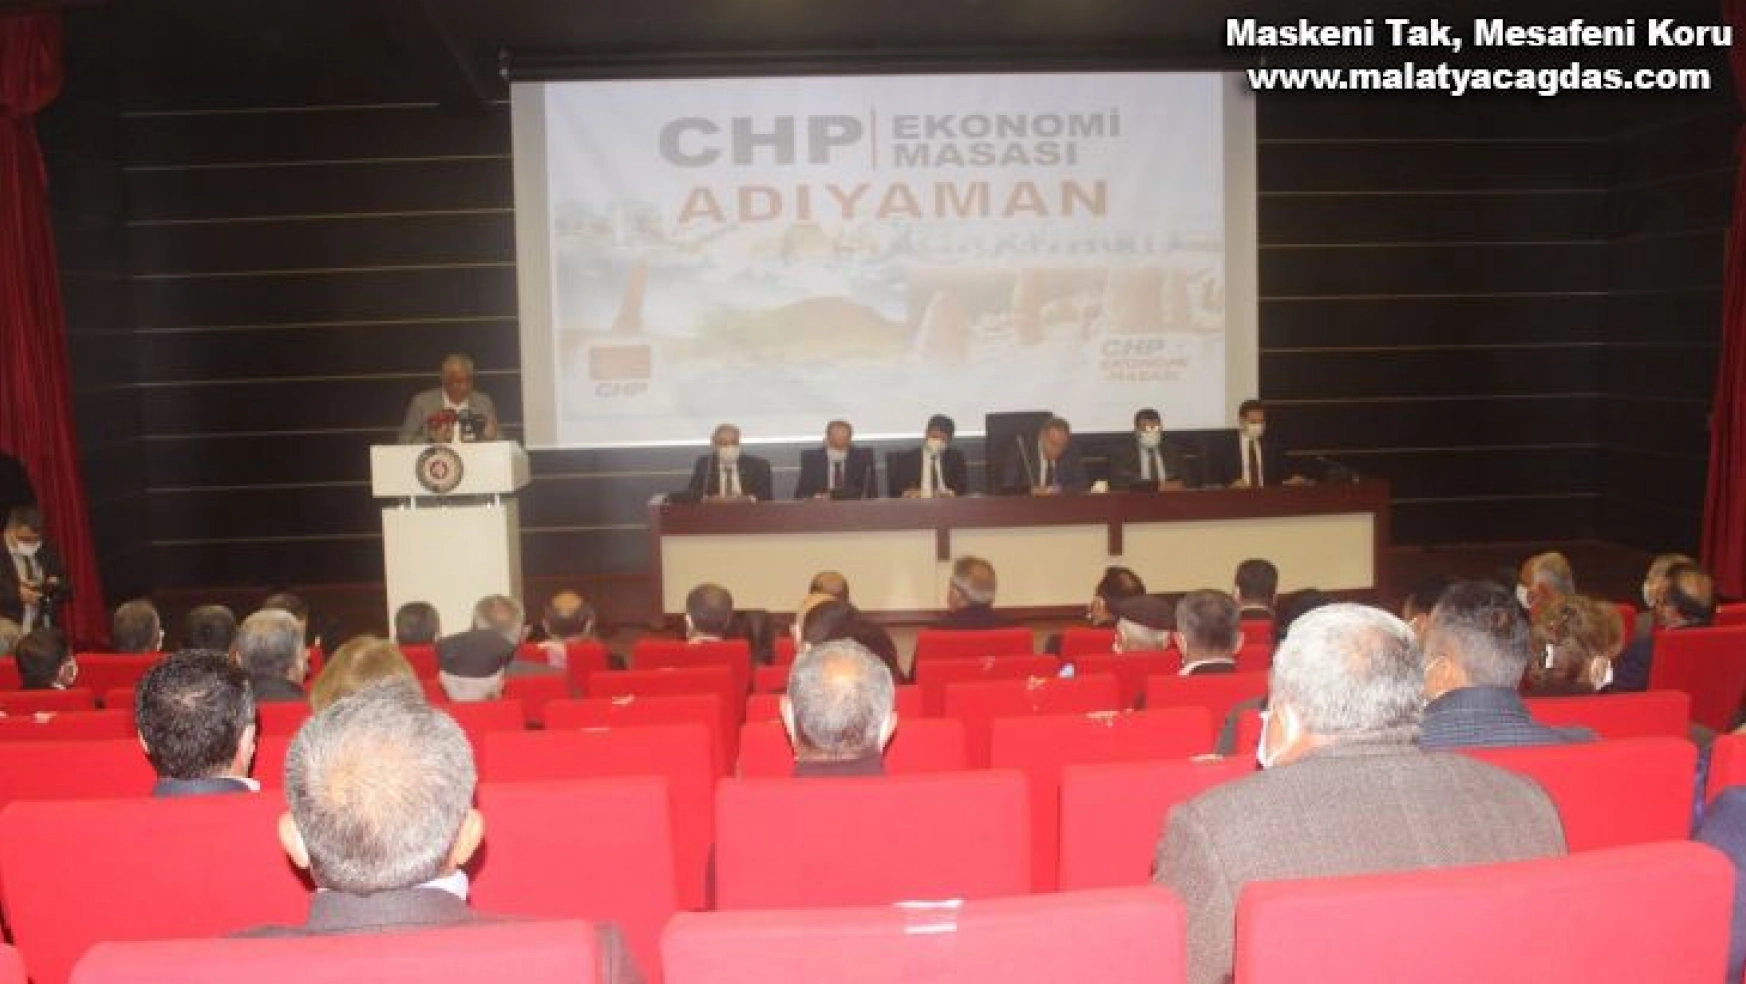 CHP ekonomi masası heyeti STK temsilcileriyle bir araya geldi